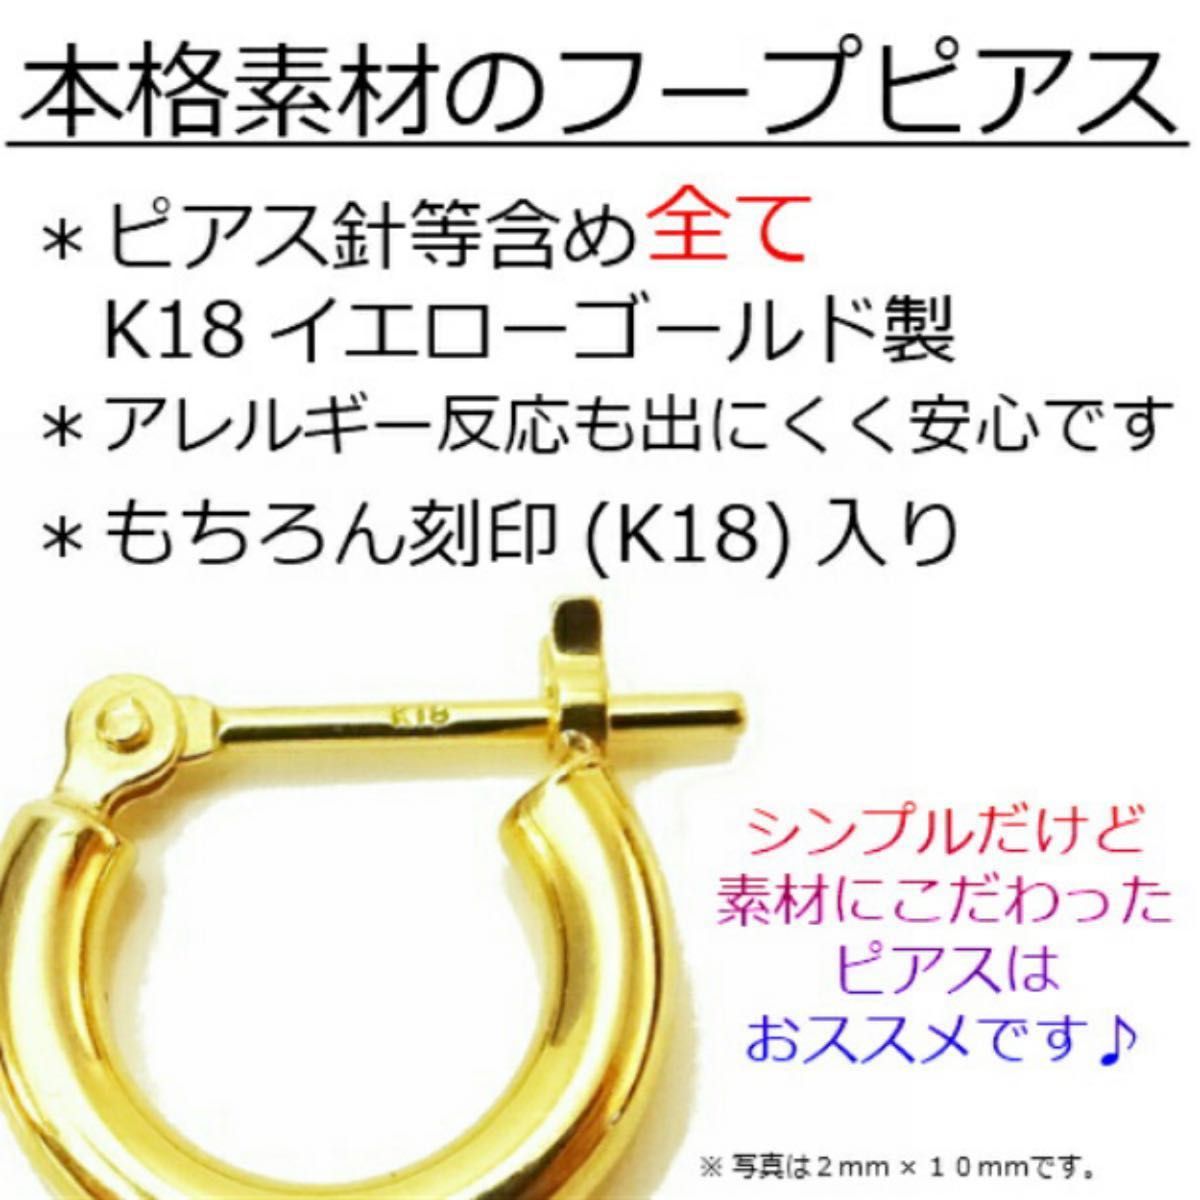 新品 K18 イエローゴールド 1×13mm フープ 18金ピアス 刻印あり 上質 日本製 ペア